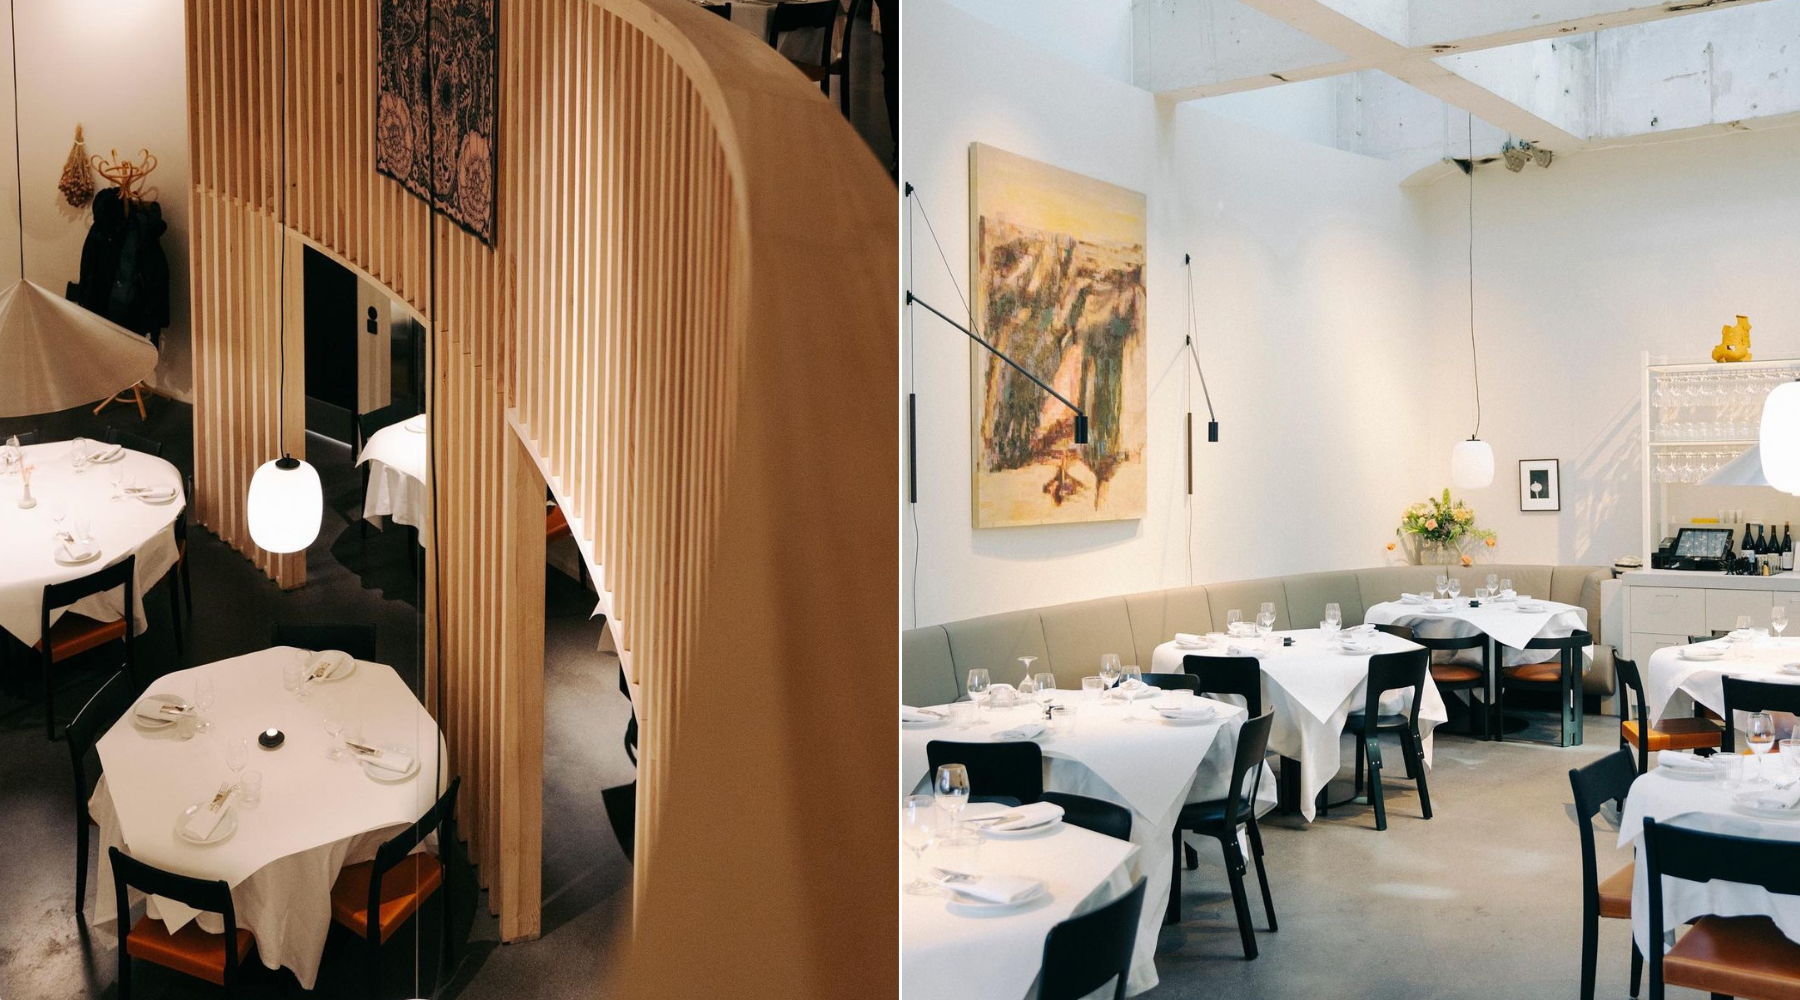 Ako planirate put u Stokholm, obavezno posetite restoran Solen